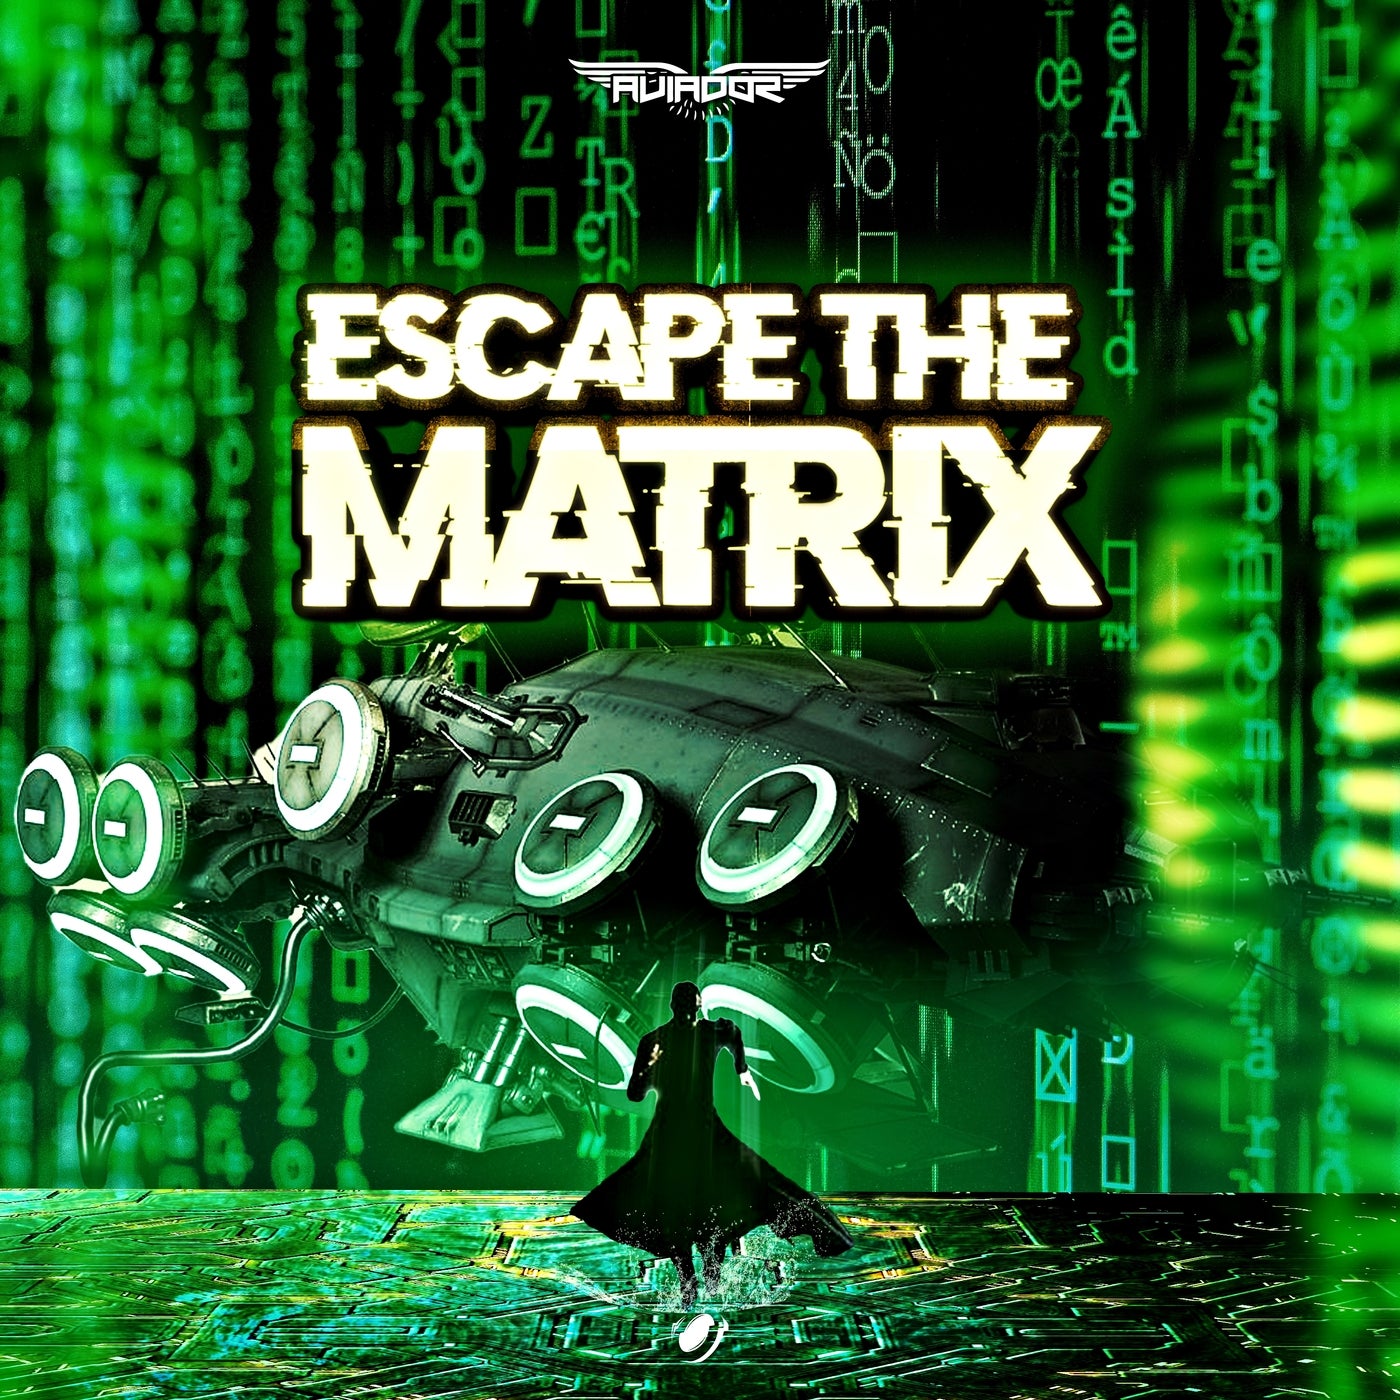 Escape the matrix  escapethematrix  TikTok